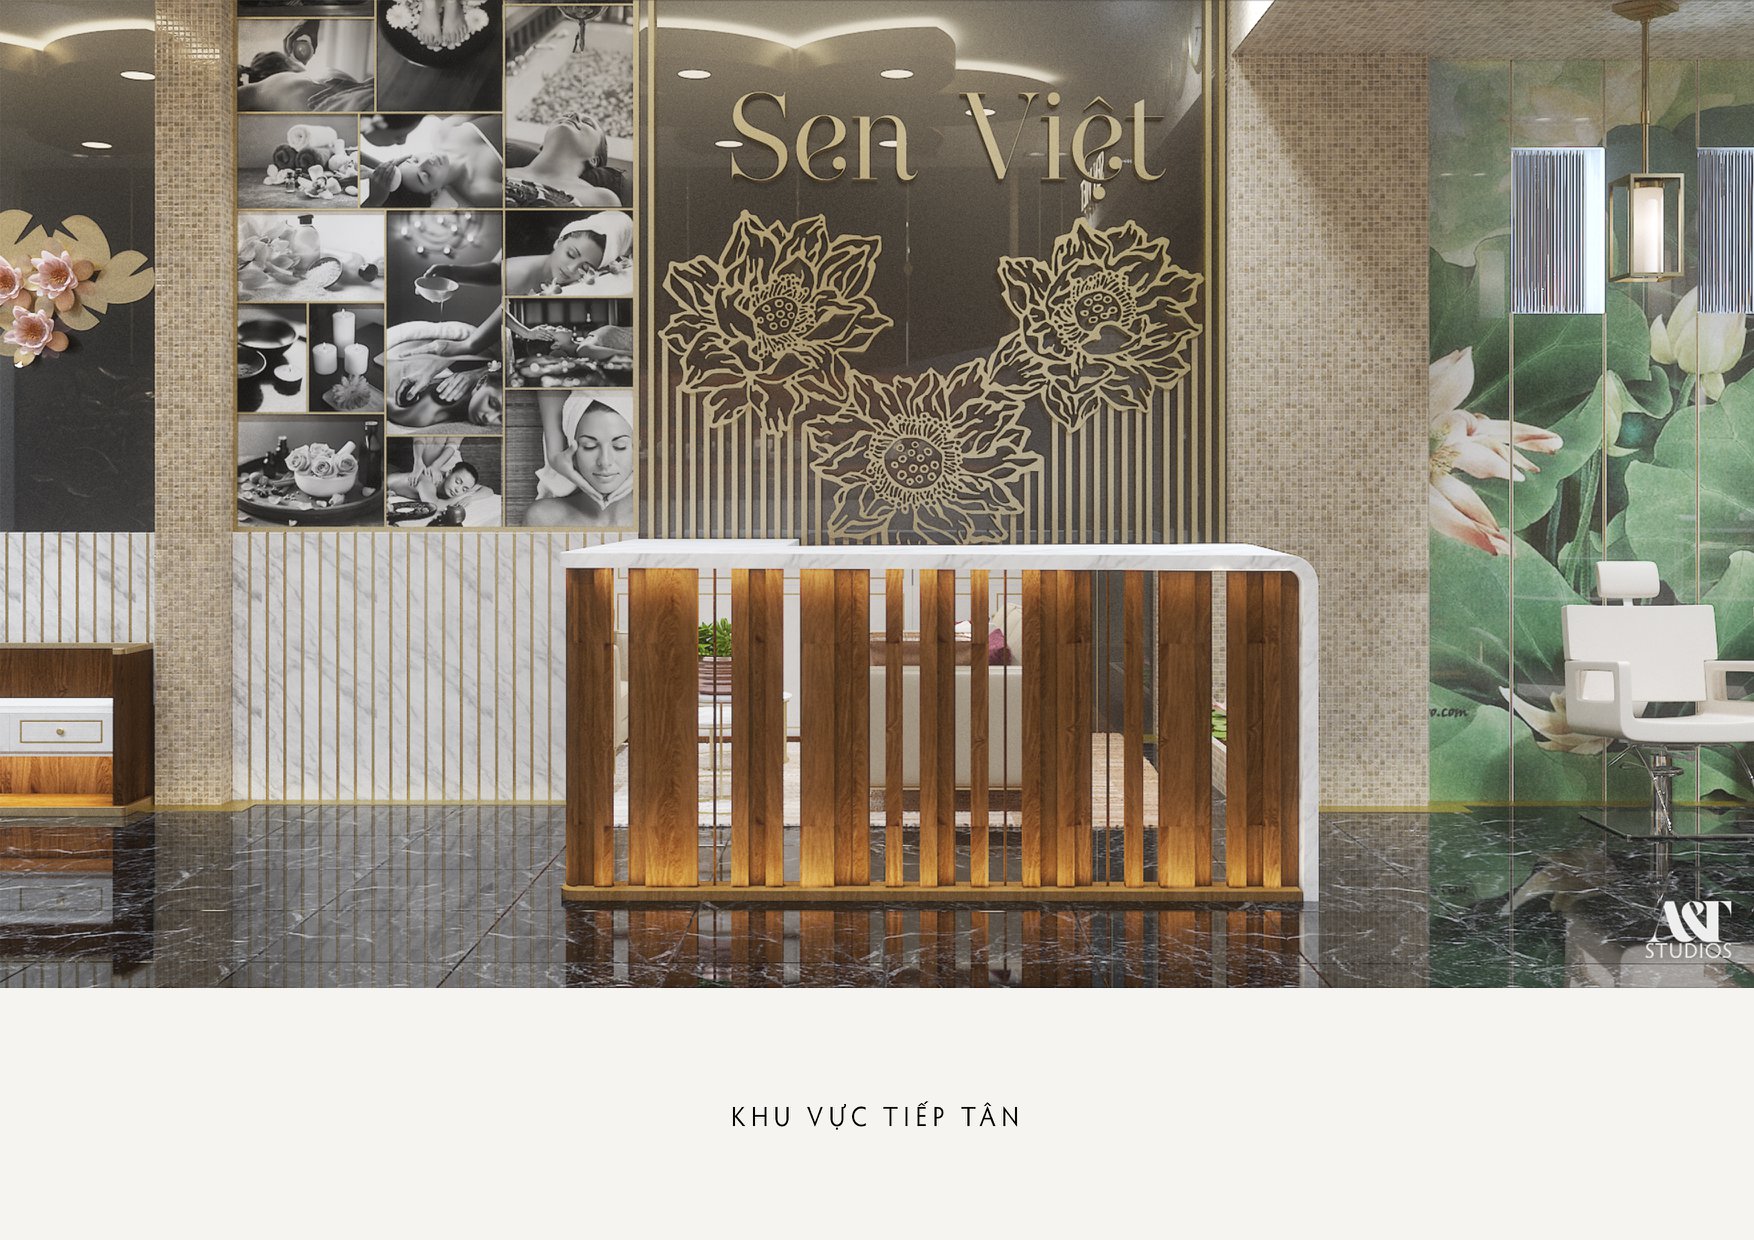 Thiết kế Spa tại Hồ Chí Minh SEN VIỆT Spa - Tp. Quy Nhơn . Bình Định 1591416041 2